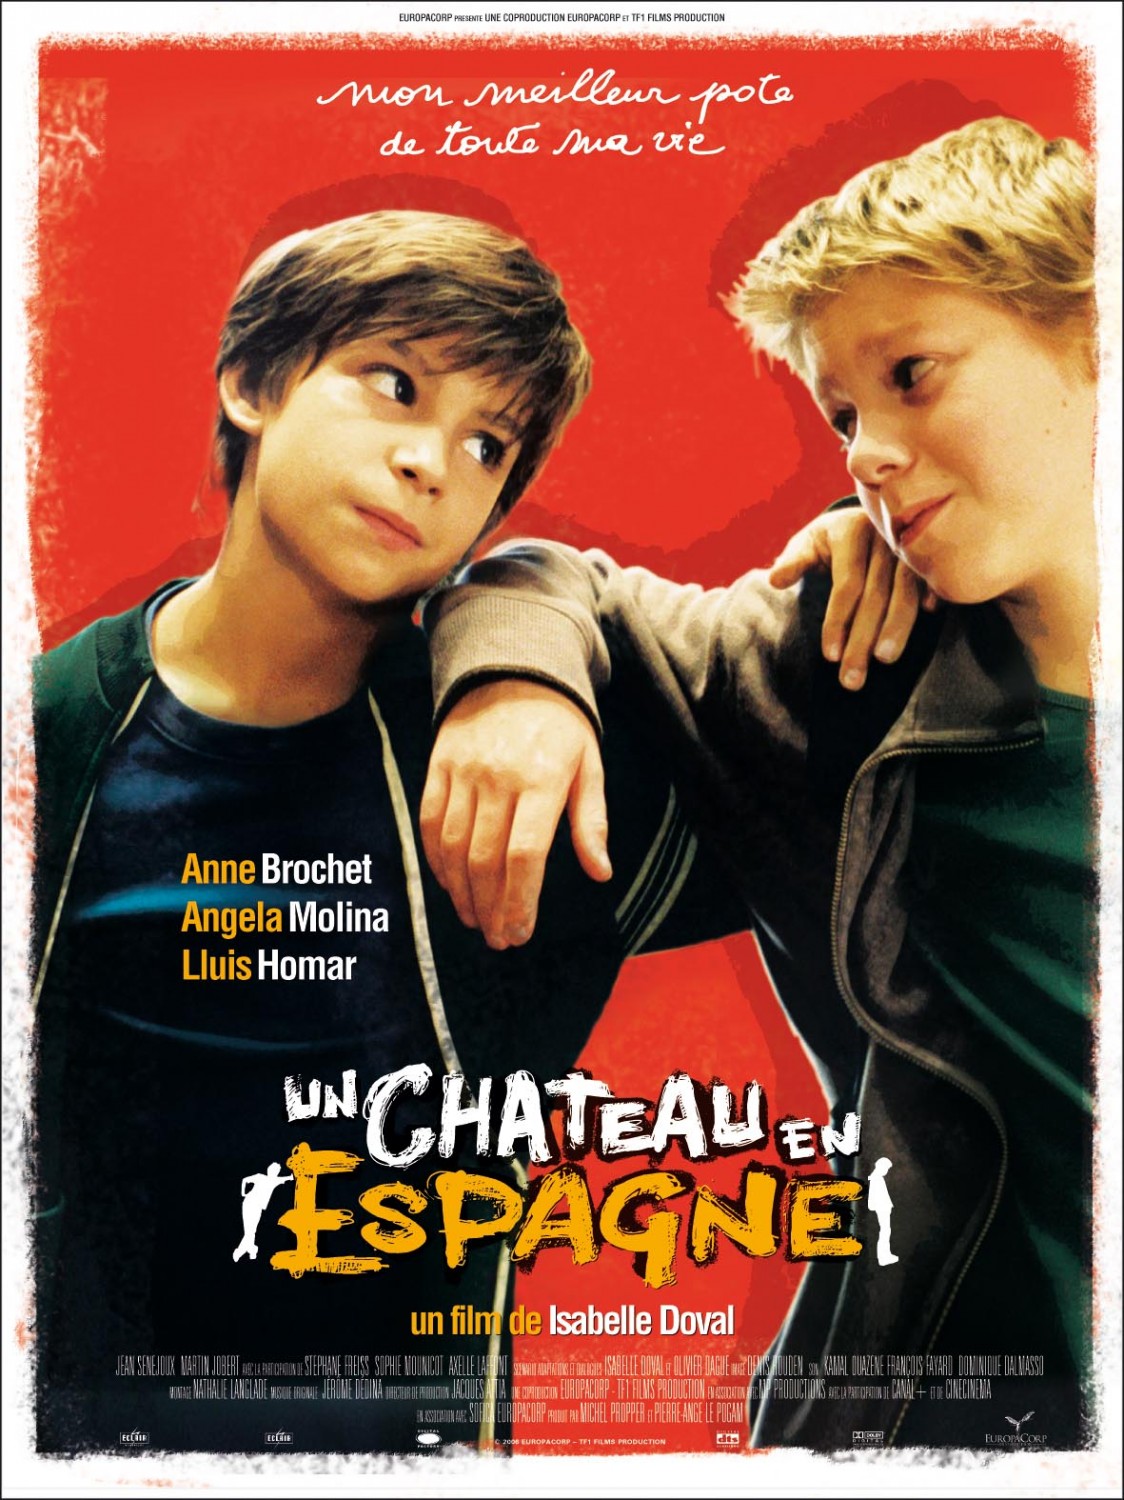 Extra Large Movie Poster Image for Un château en Espagne 